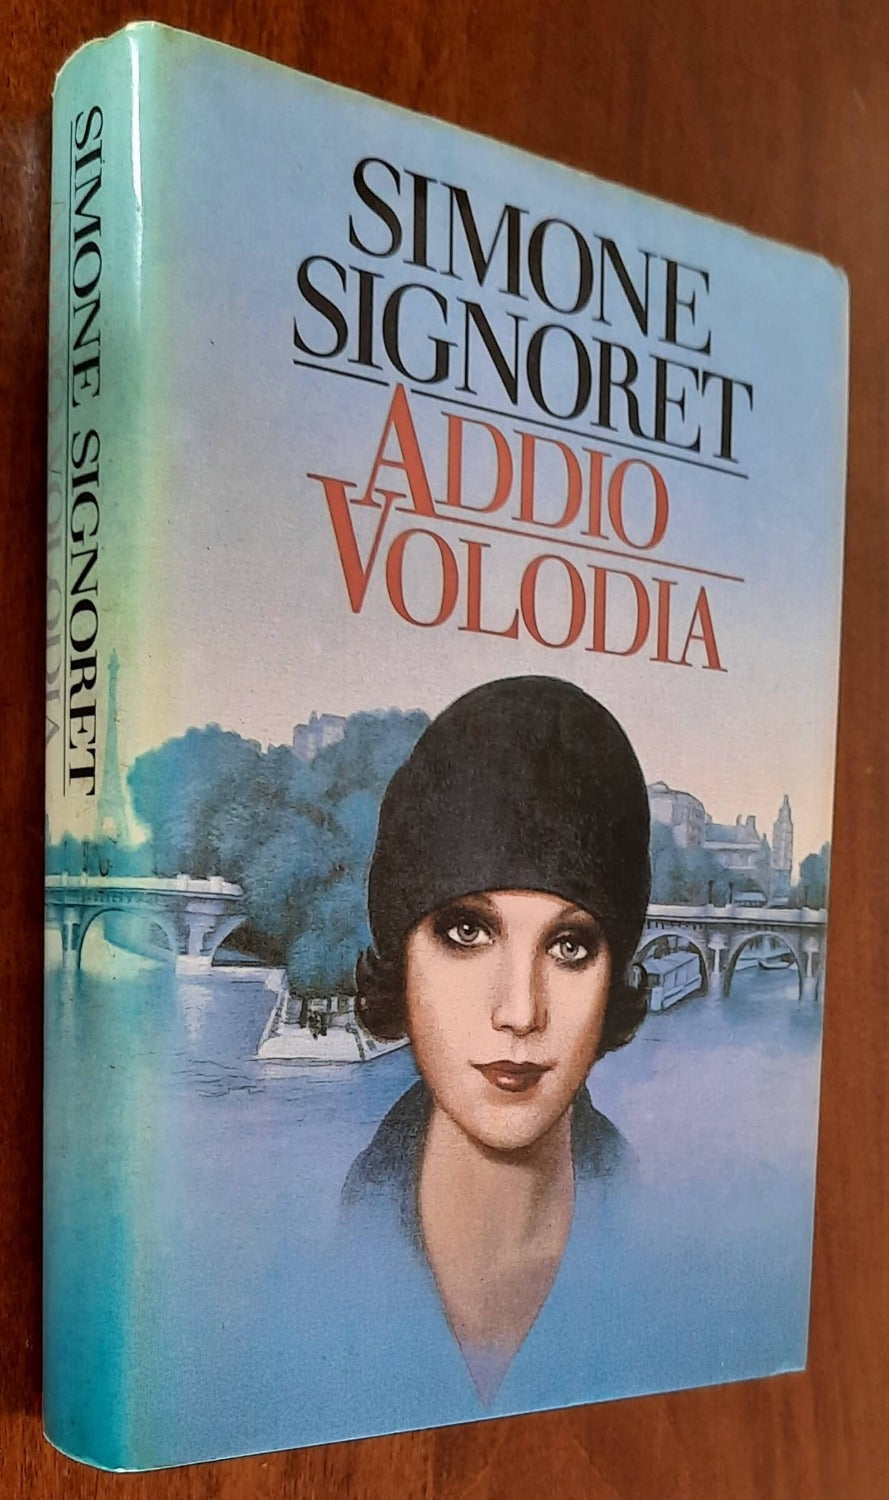 Addio Volodia - di Simone Signoret - CDE